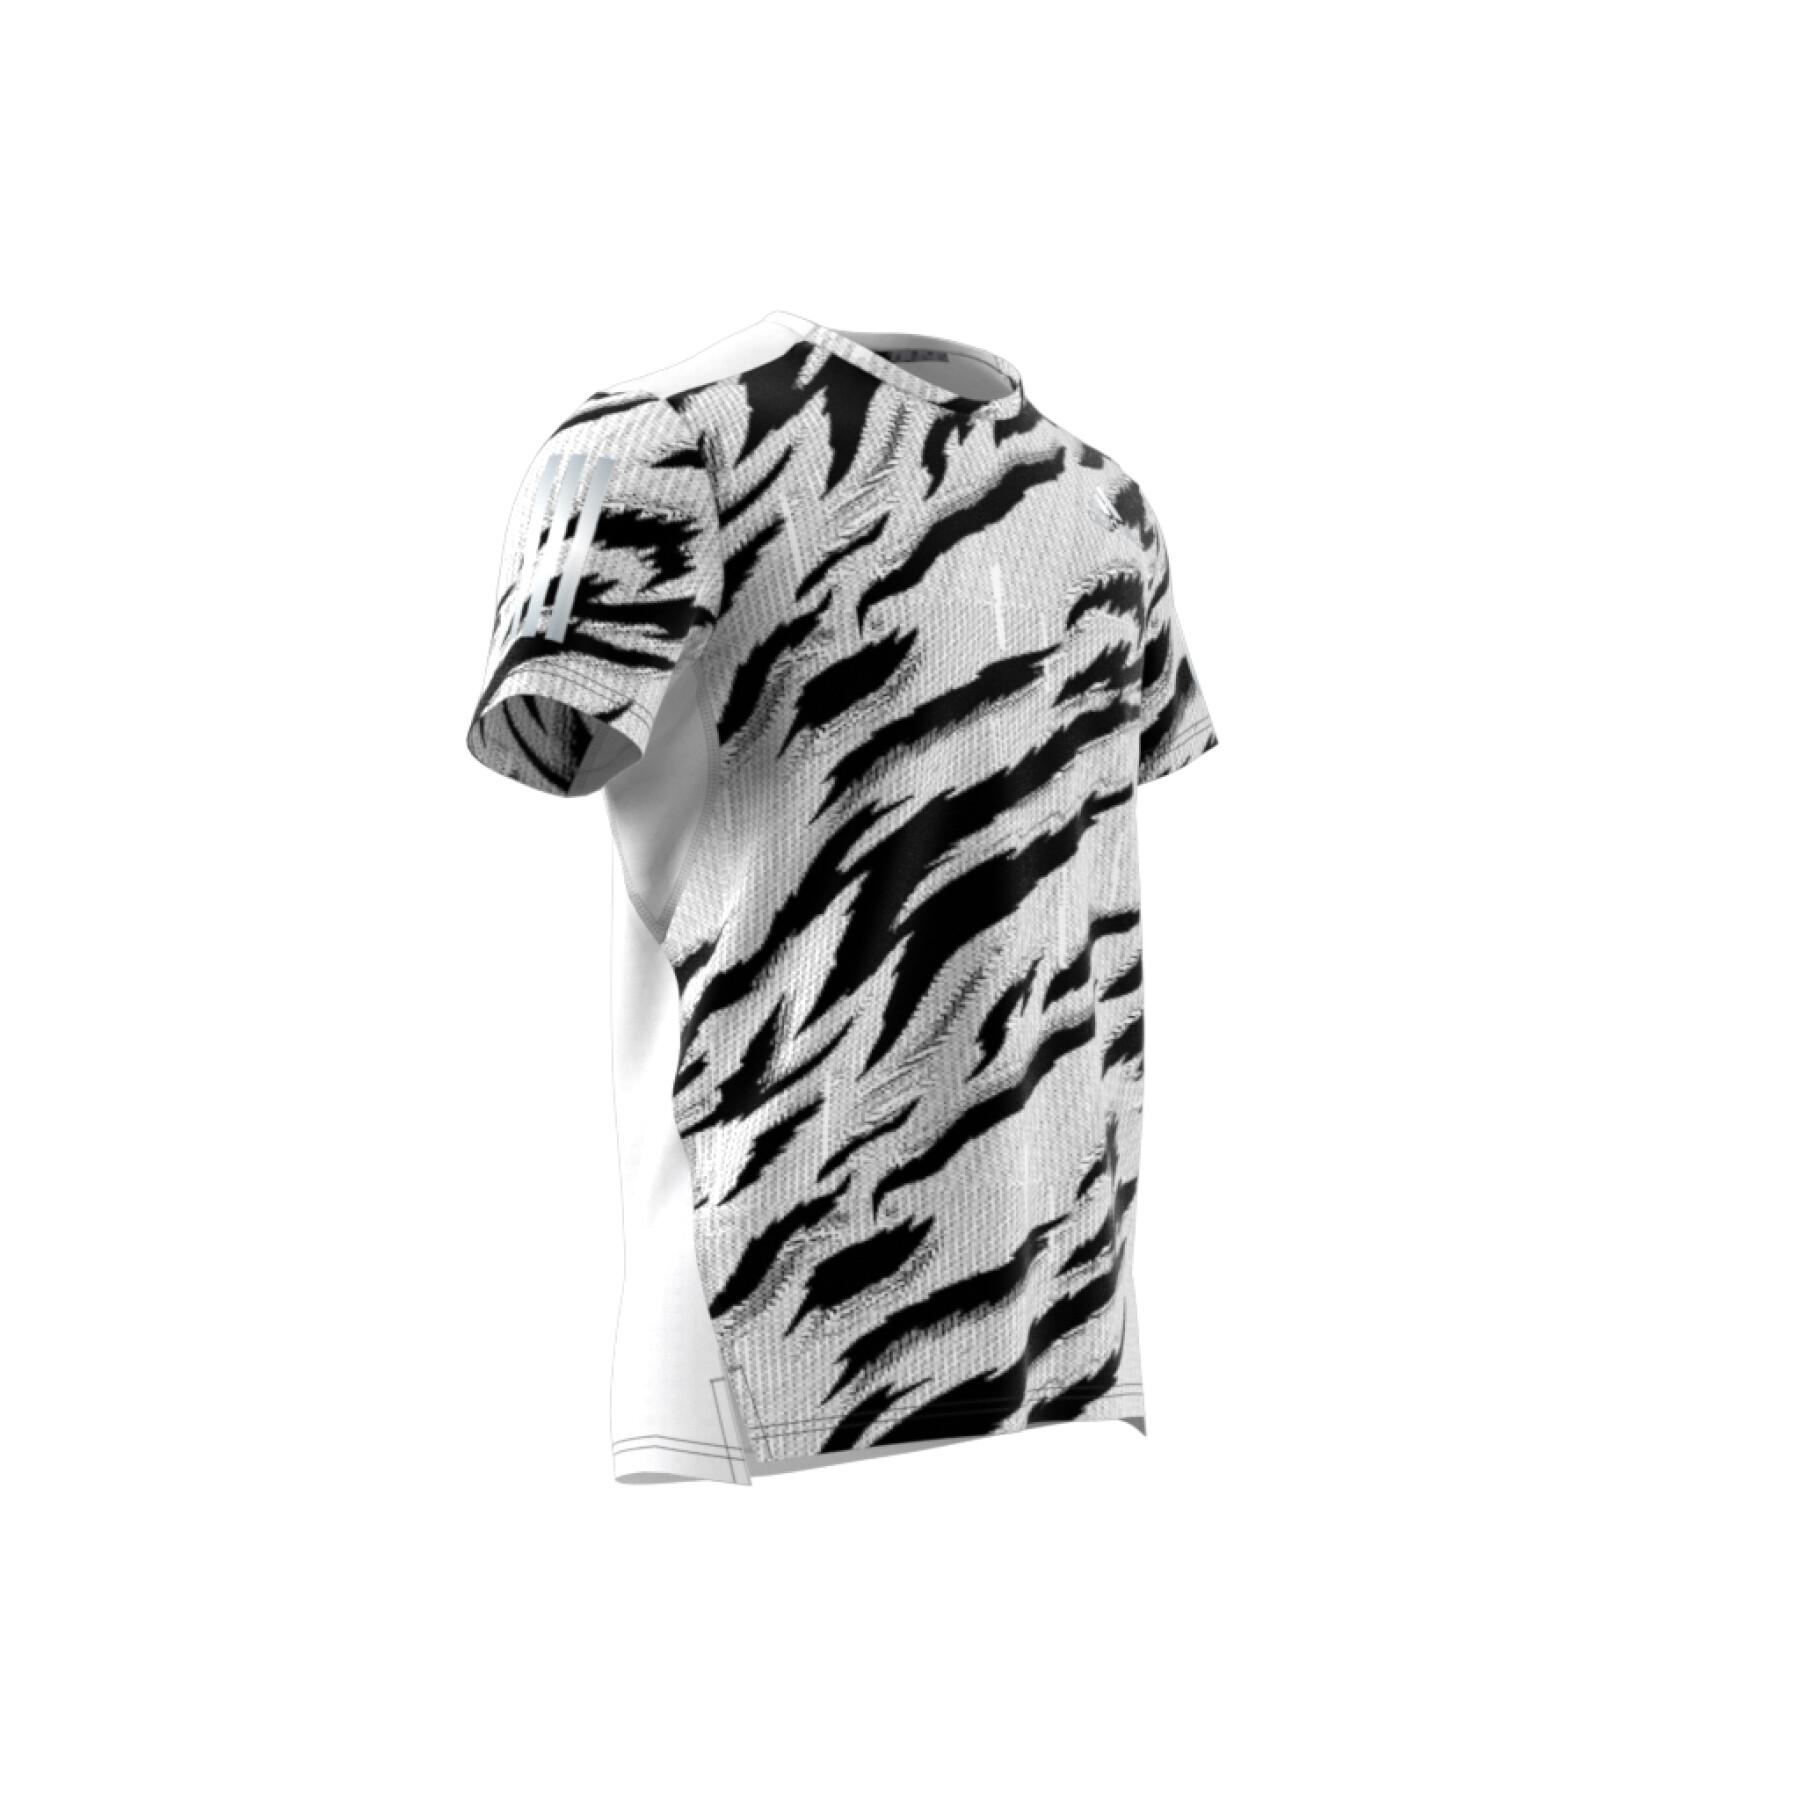 Camiseta adidas Own The Run Tiger